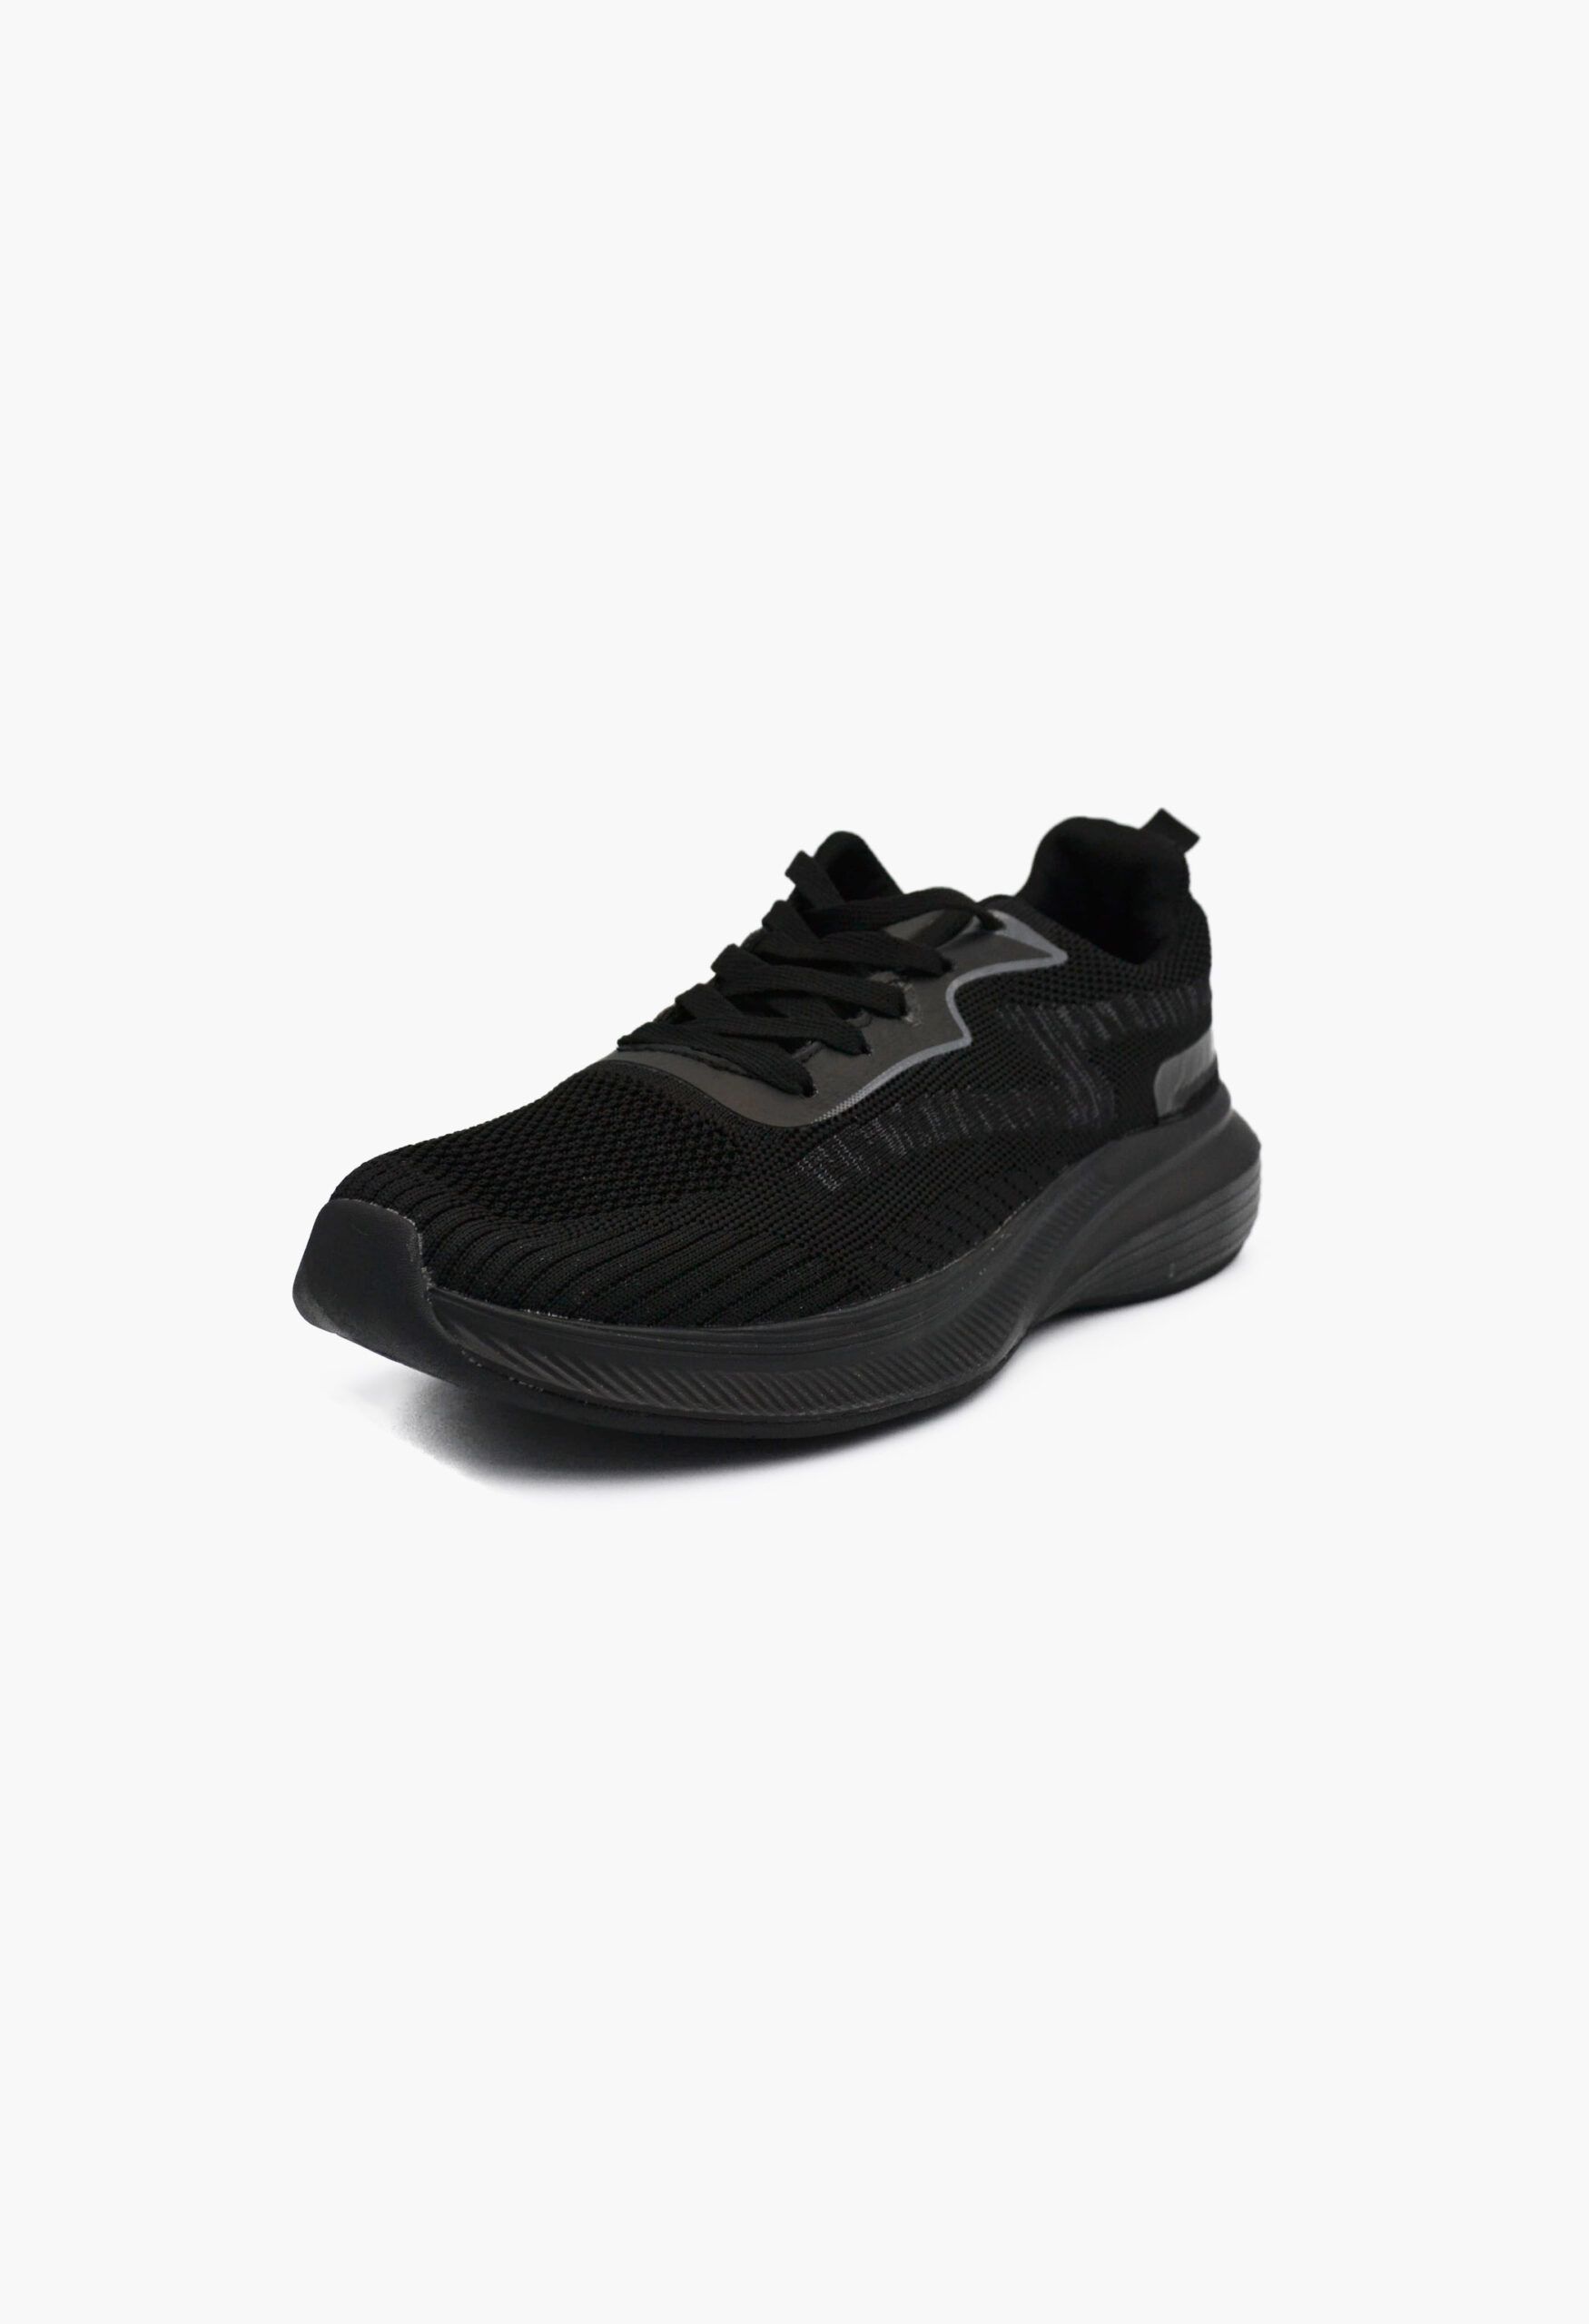 Ανδρικά Αθλητικά Παπούτσια για Τρέξιμο Μαύρο / A-35-black/dark-grey ΑΝΔΡΙΚΑ ΠΑΠΟΥΤΣΙΑ joya.gr